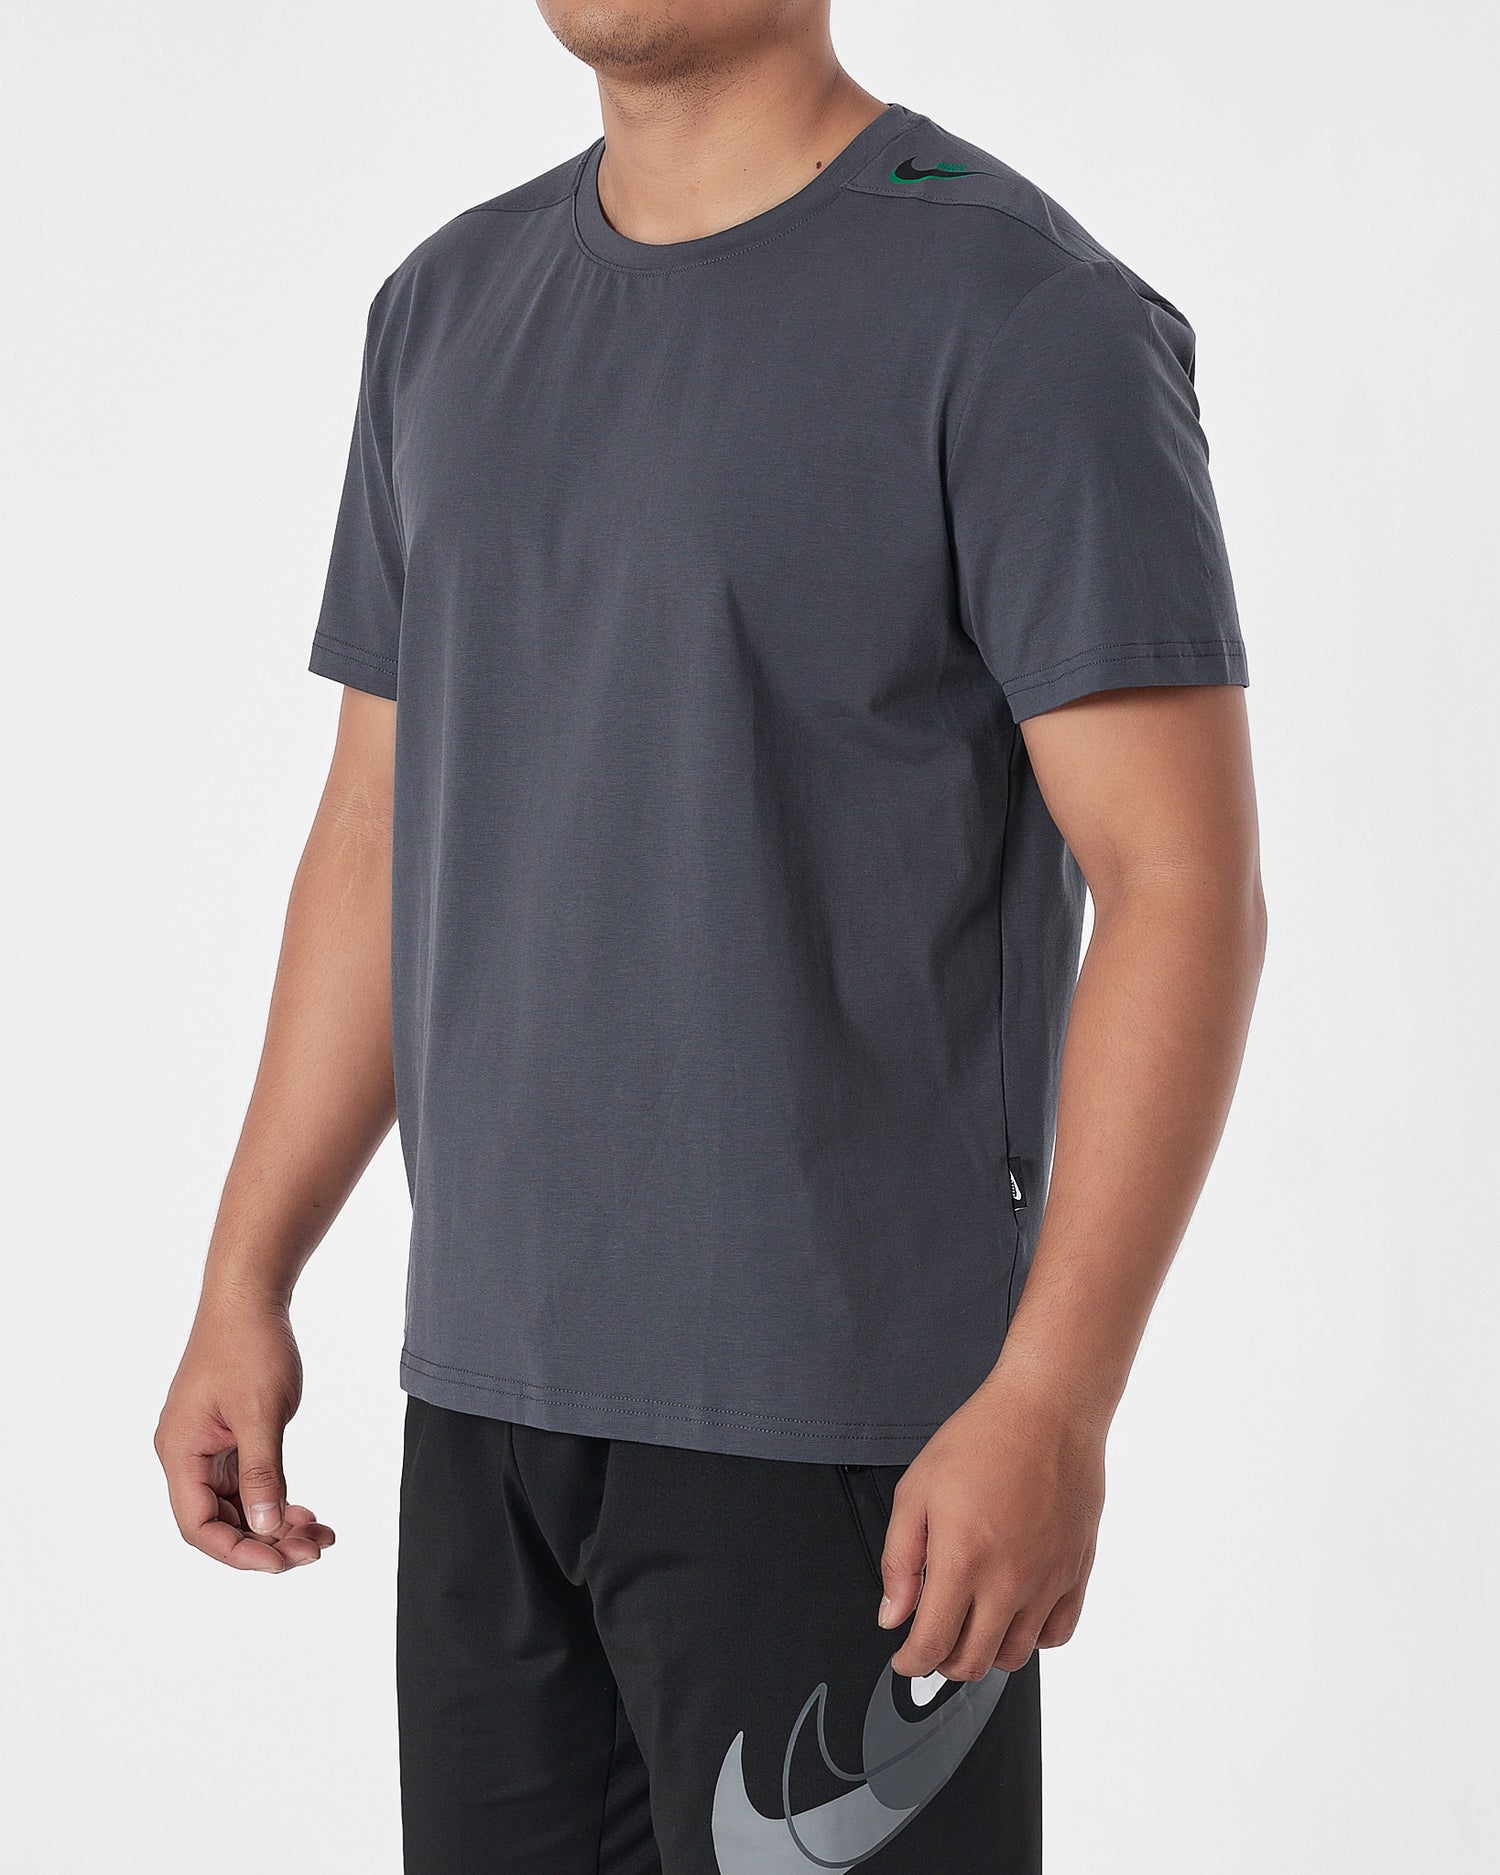 NIK Swooh  Shoulder Printed Men Dark Grey T-Shirt 13.50